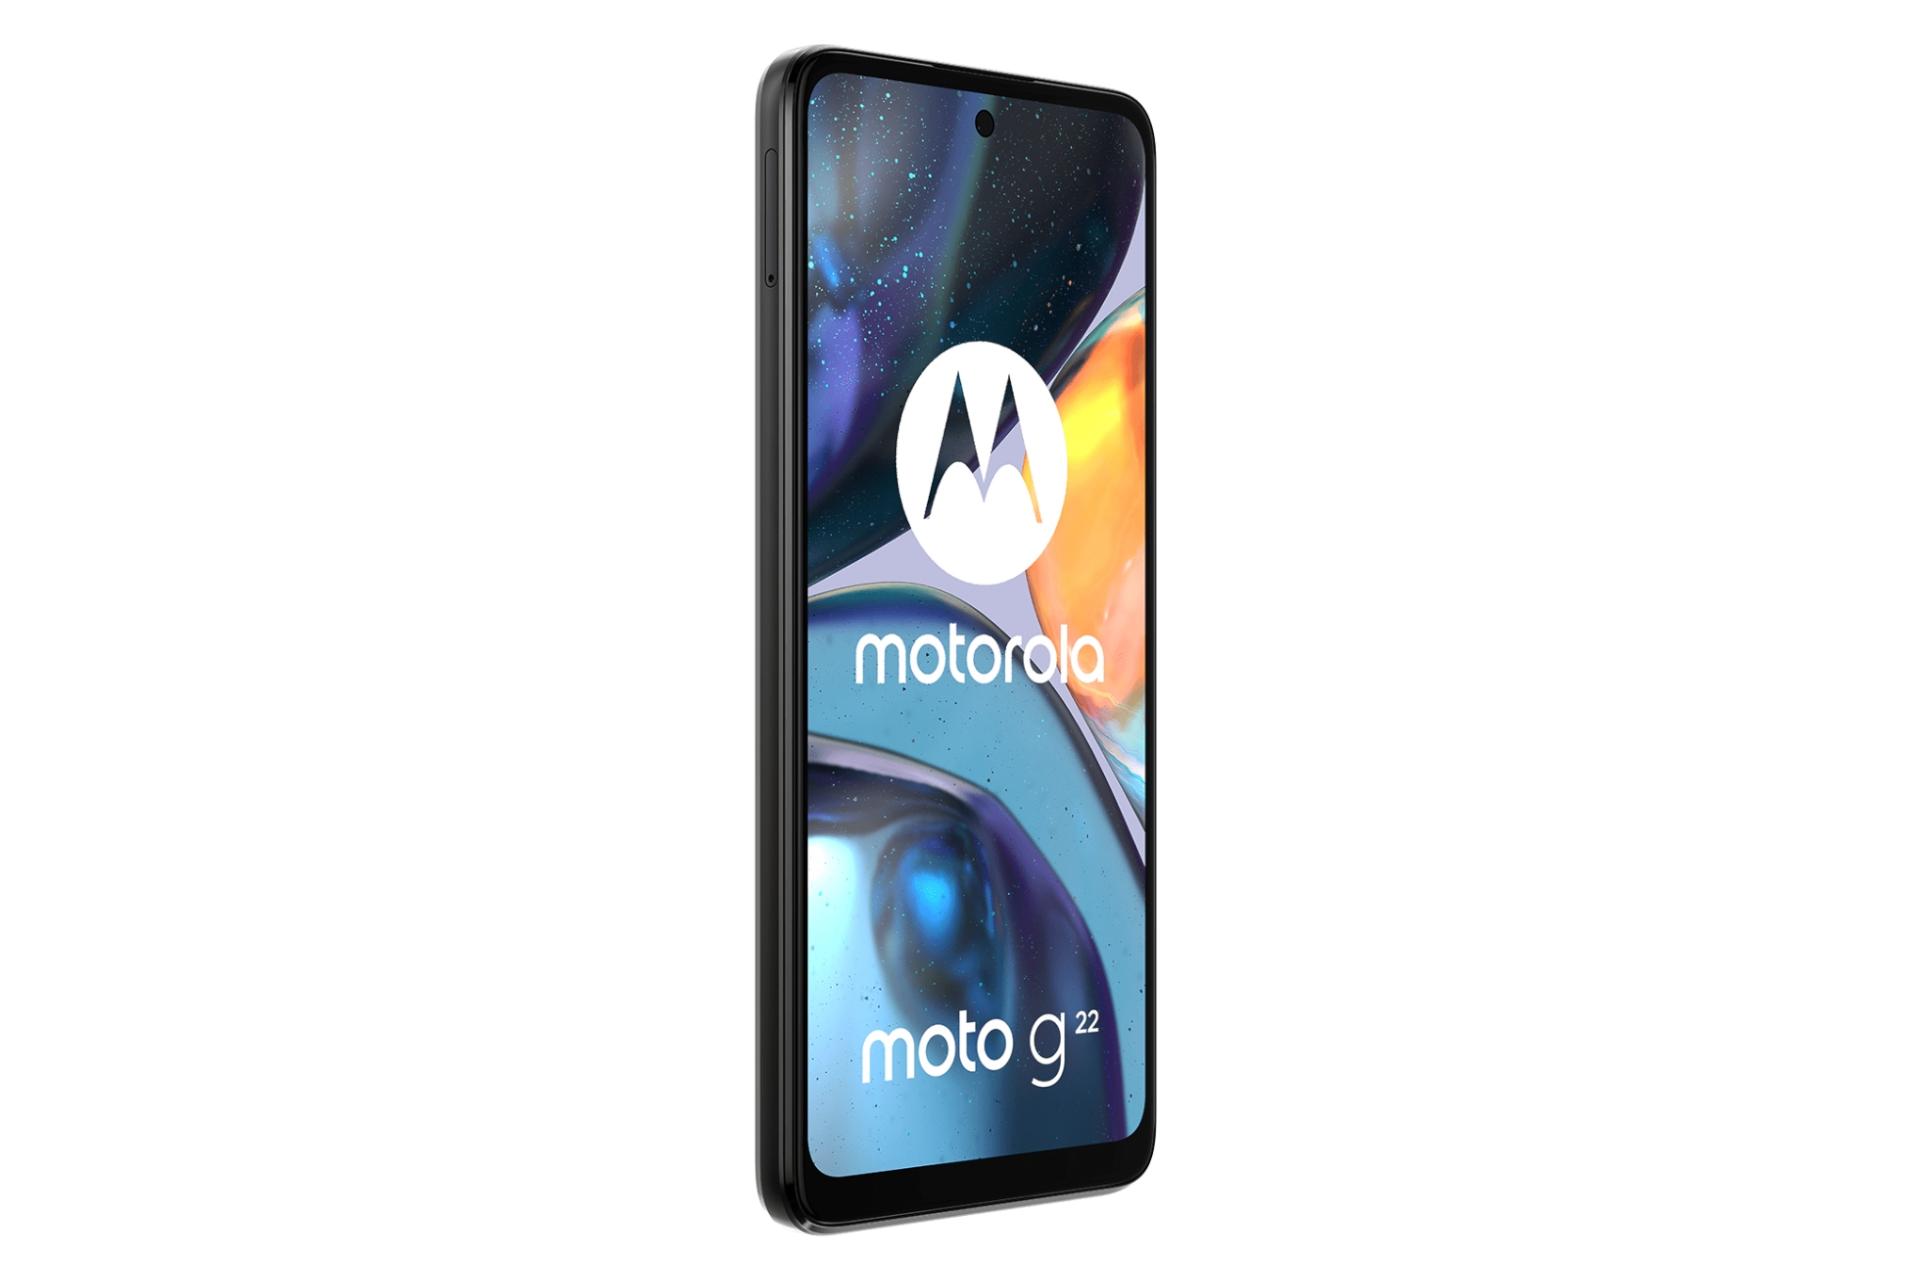 نمای چپ پنل جلو گوشی موبایل موتو G22 موتورولا / Motorola Moto G22